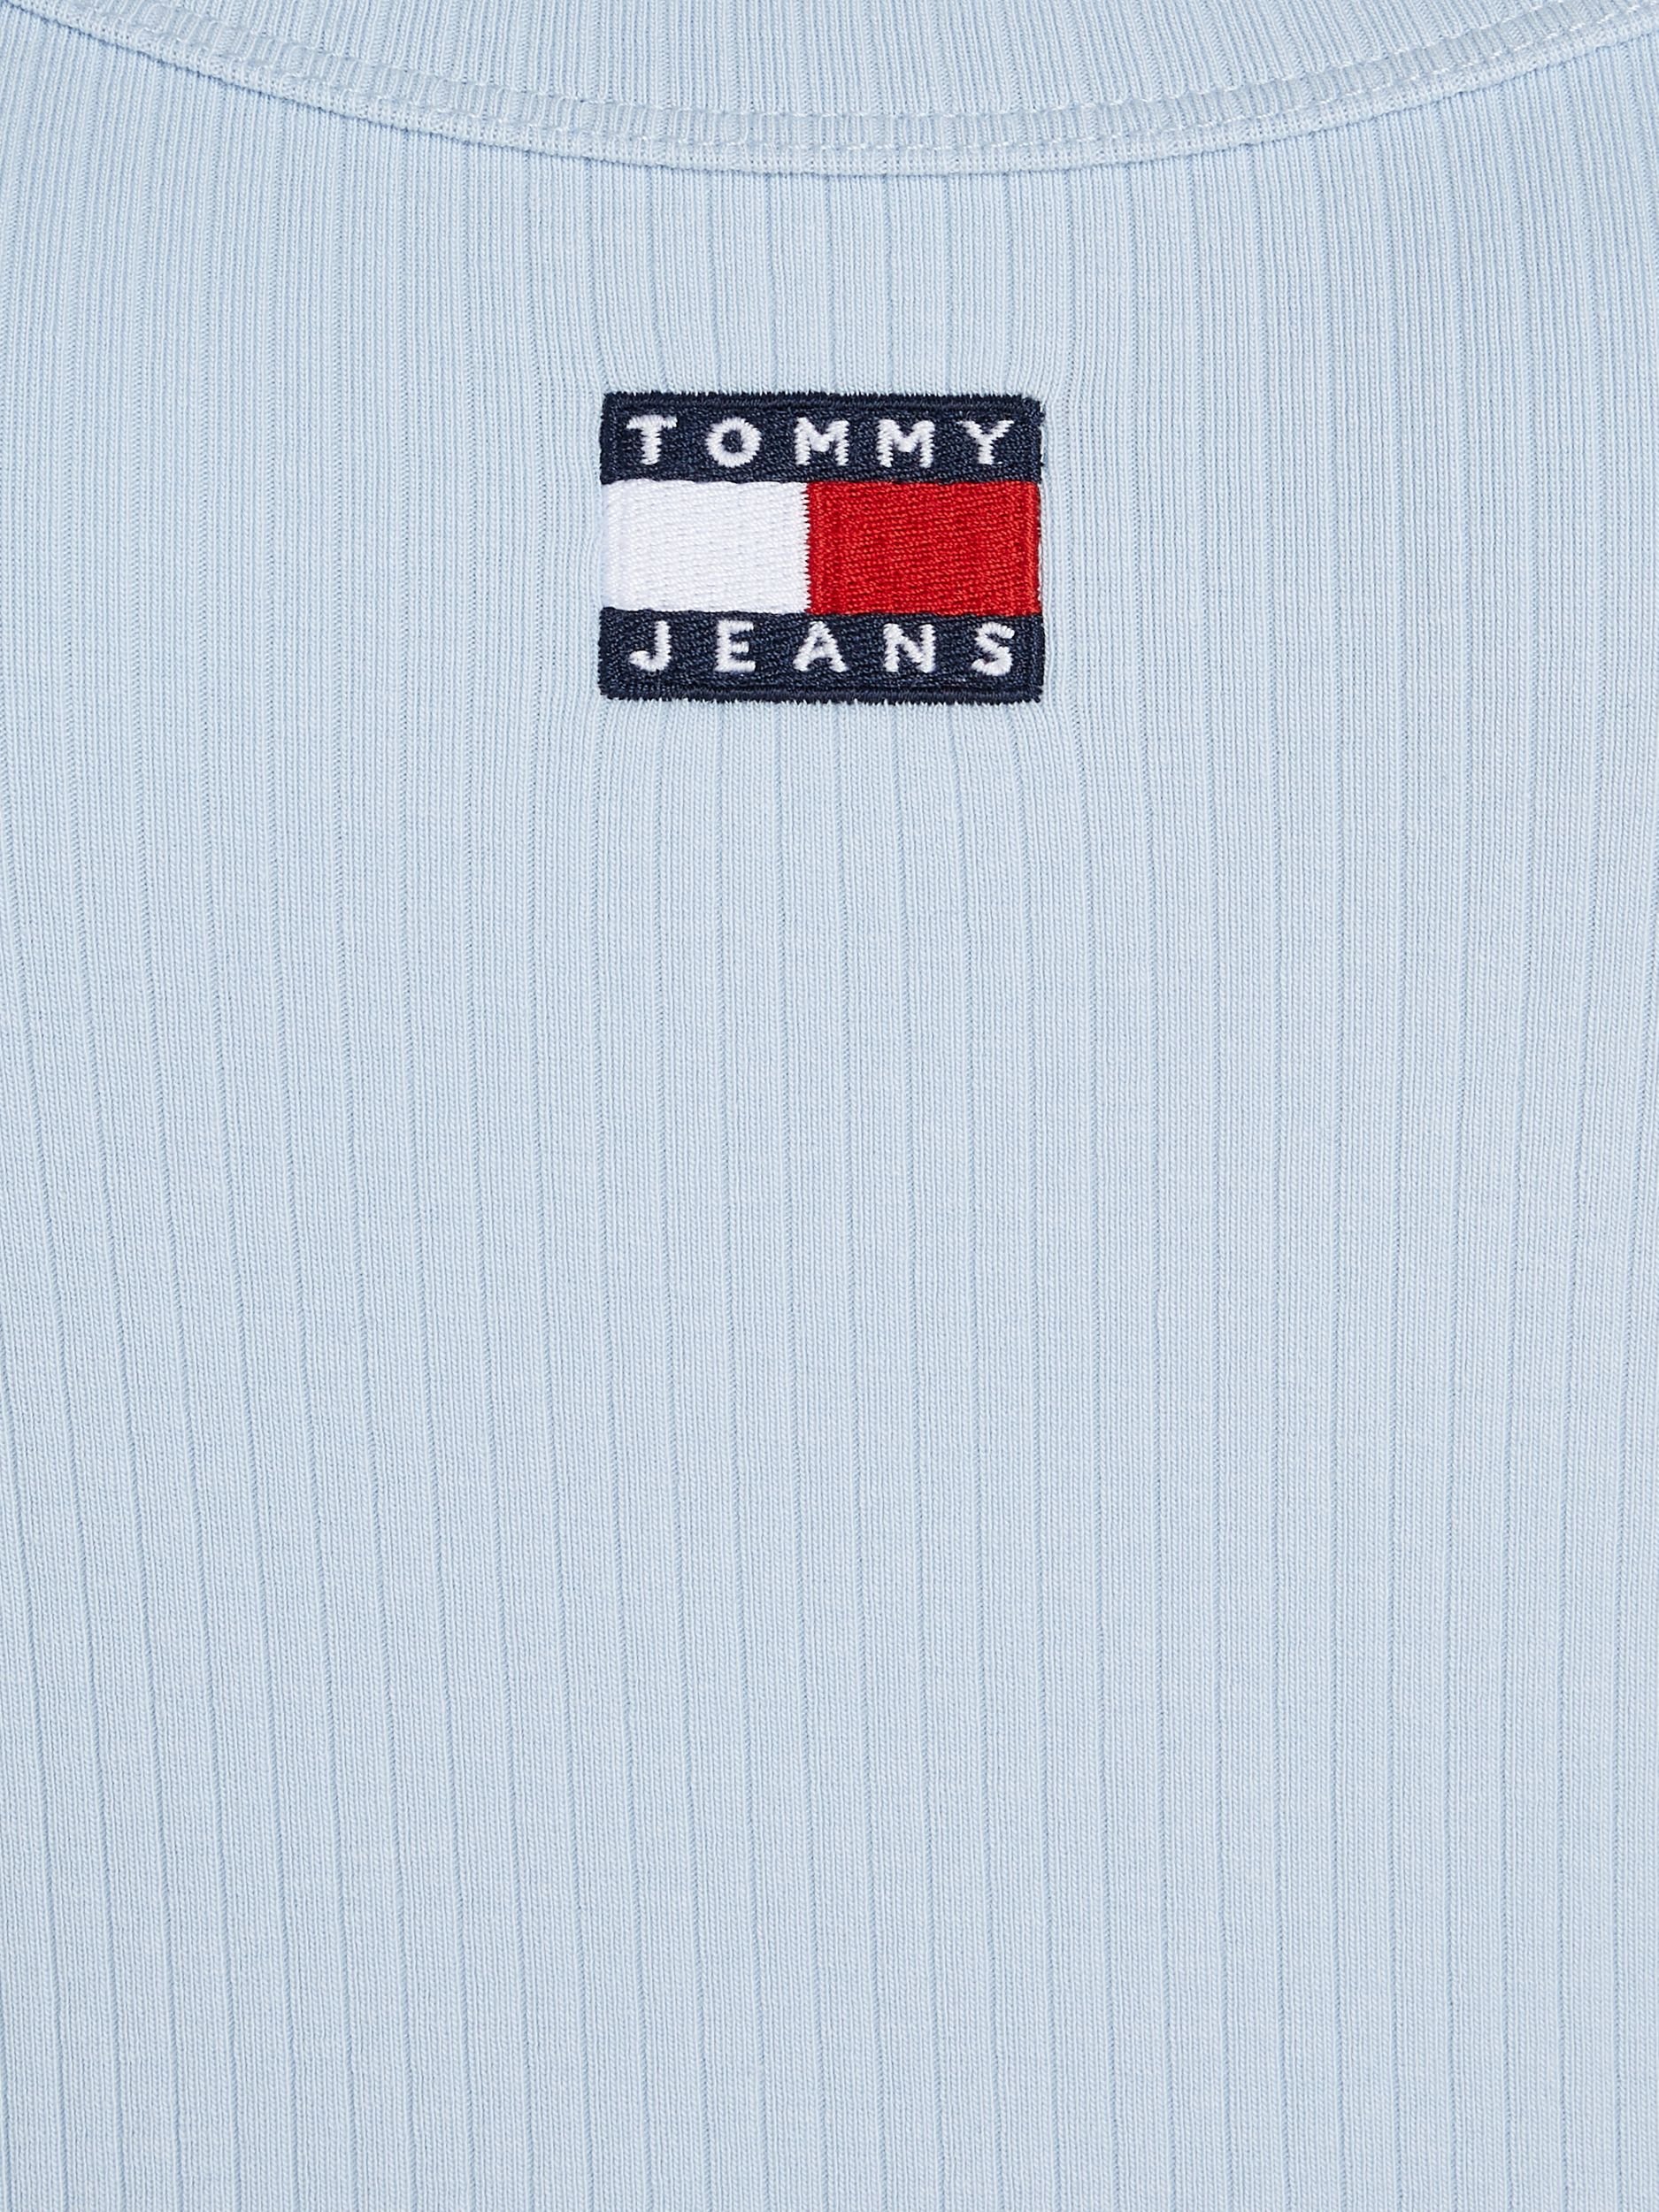 Tommy Jeans Longsleeve 